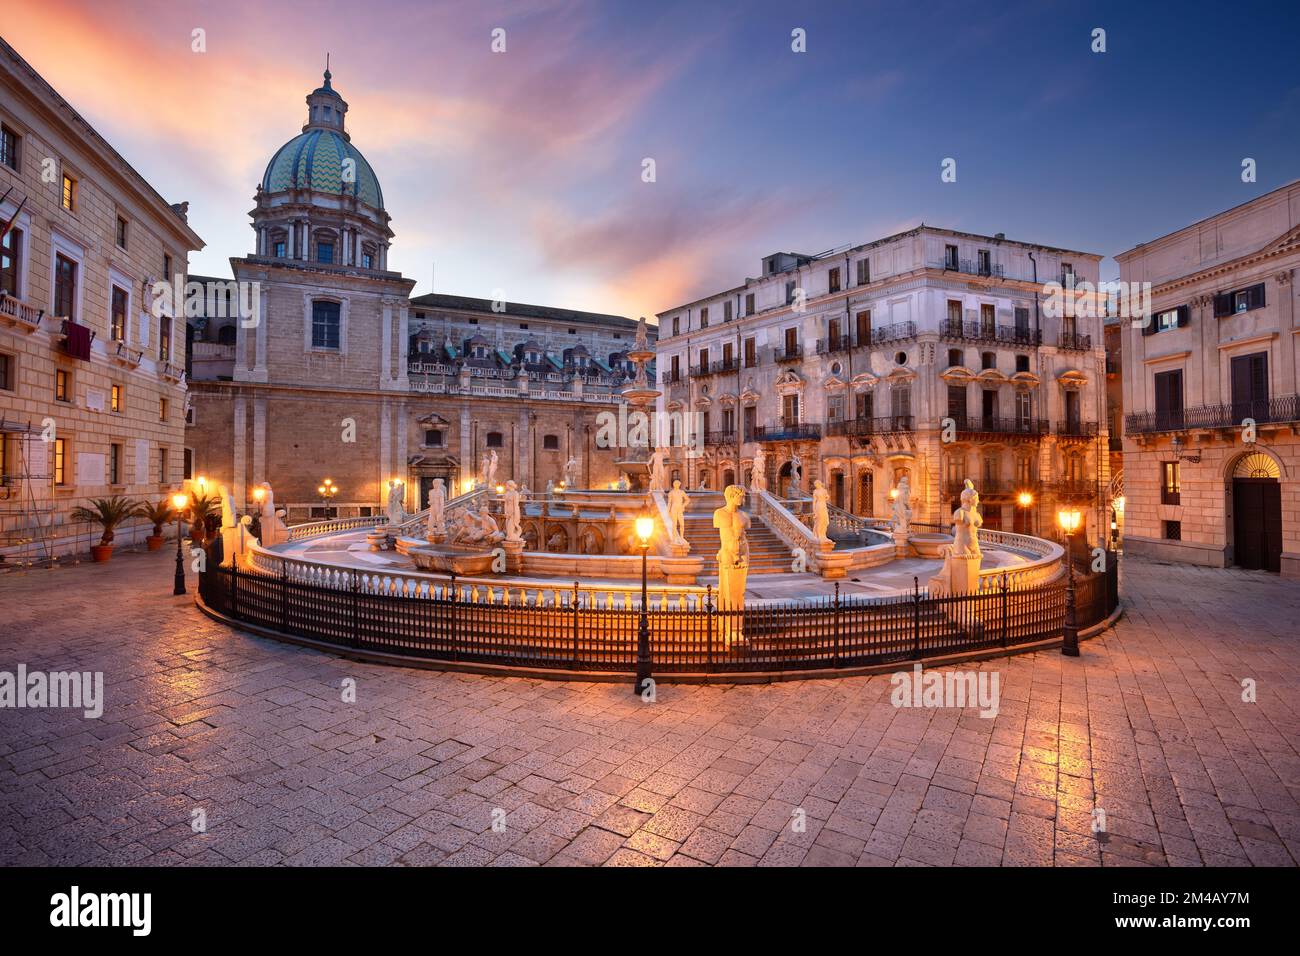 Palermo, Sizilien, Italien. Stadtbild von Palermo, Sizilien mit dem berühmten Prätorianbrunnen auf der Piazza Pretoria bei Sonnenuntergang. Stockfoto